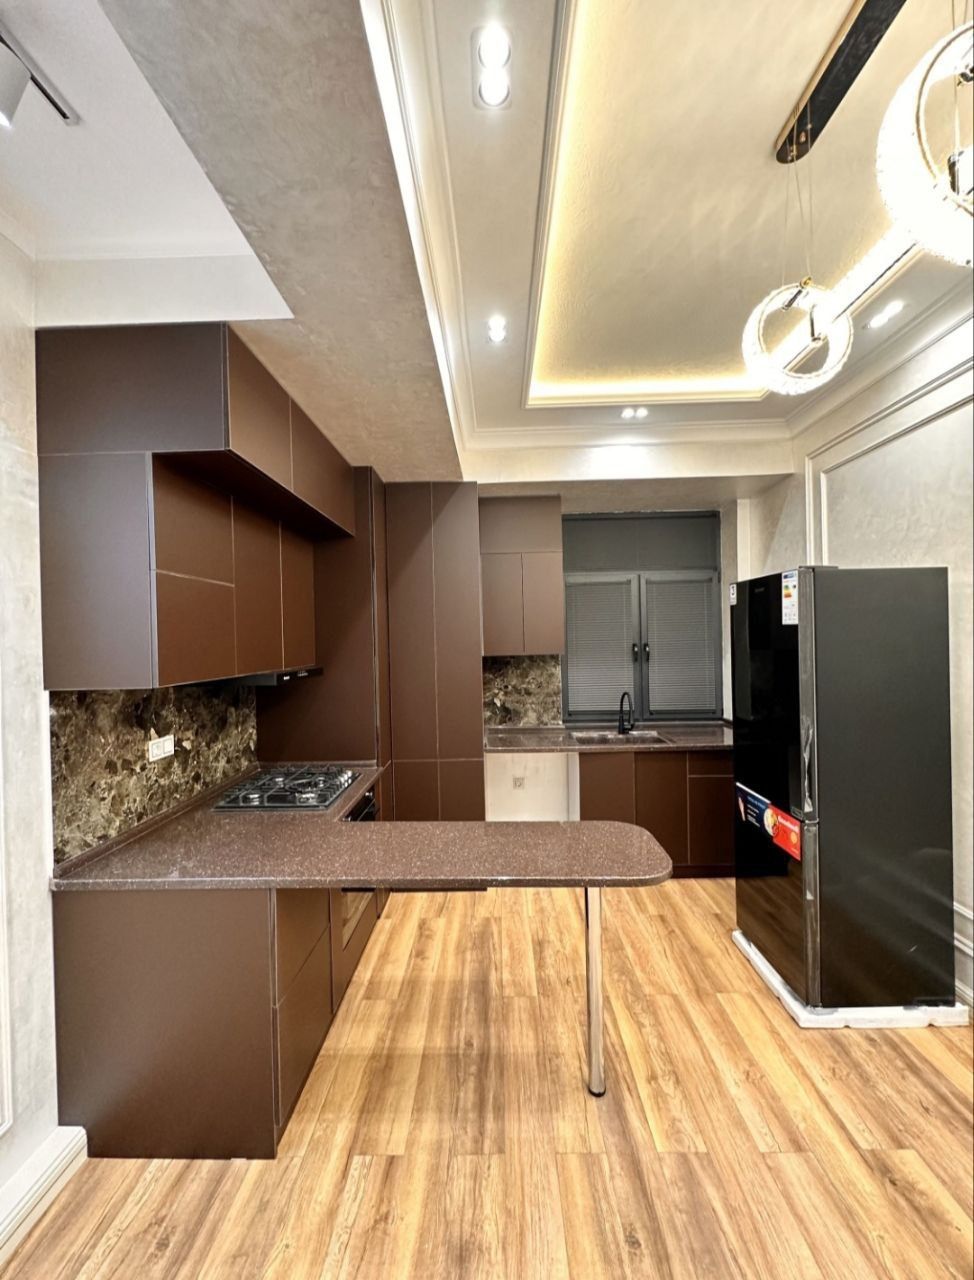 Продается уникальная 3-комнатная квартира в новостройке ЖК "Манзур" в